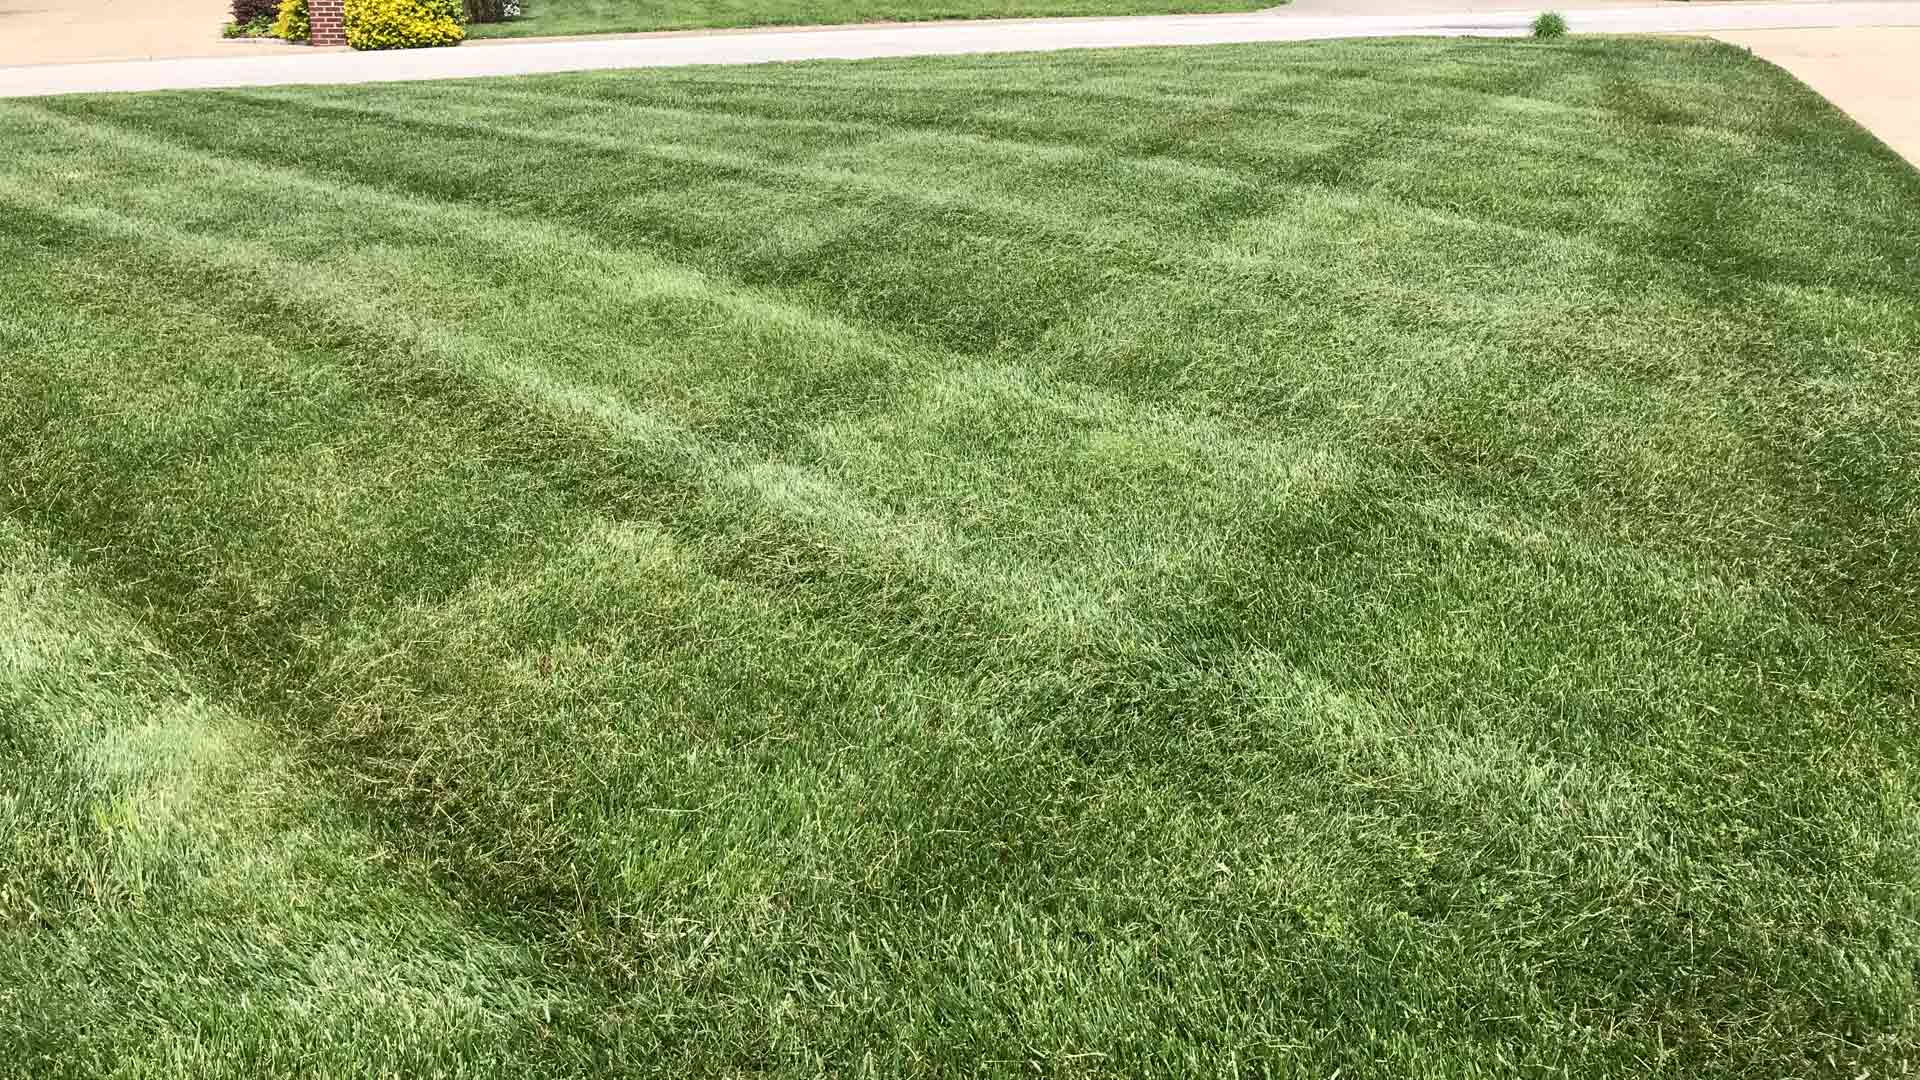 Serviced lawn by Sean's Lawns LLC in Louisville, KY.